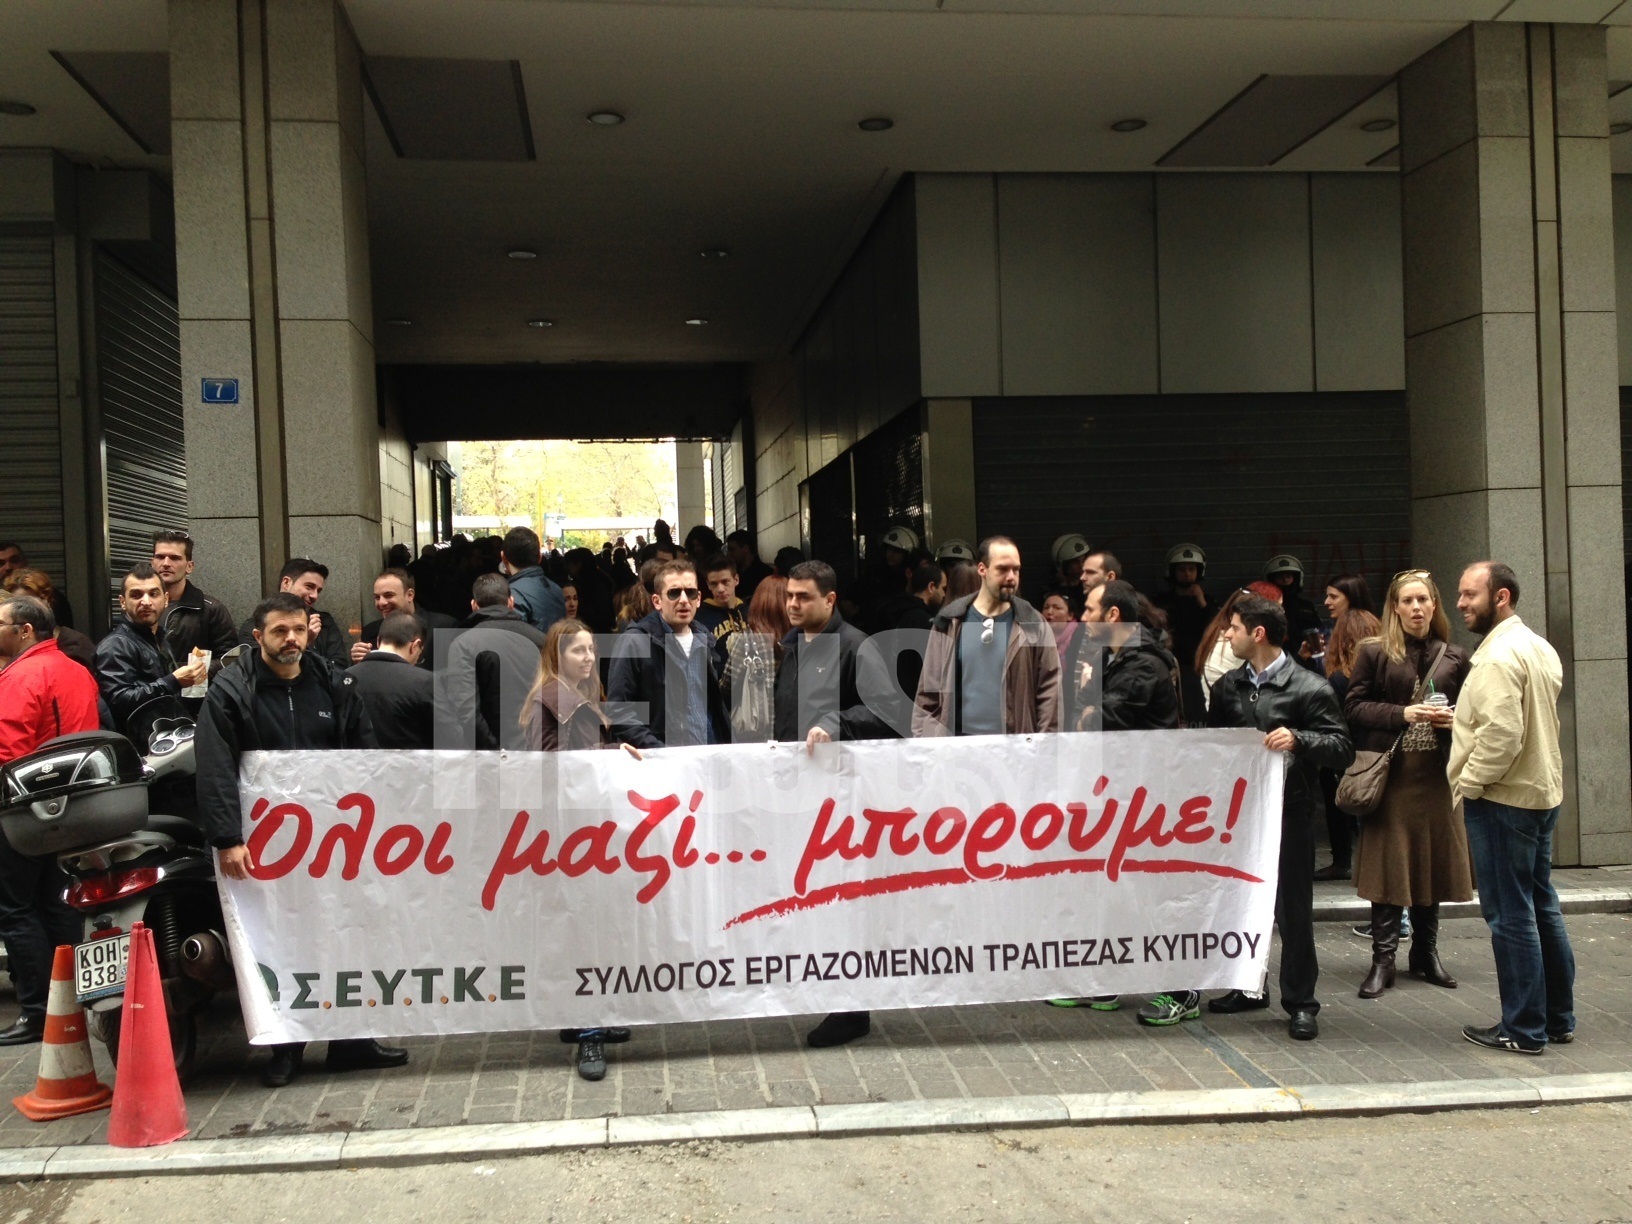 Τι θα γίνει με τους εργαζόμενους στις κυπριακές τράπεζες της Ελλάδας;